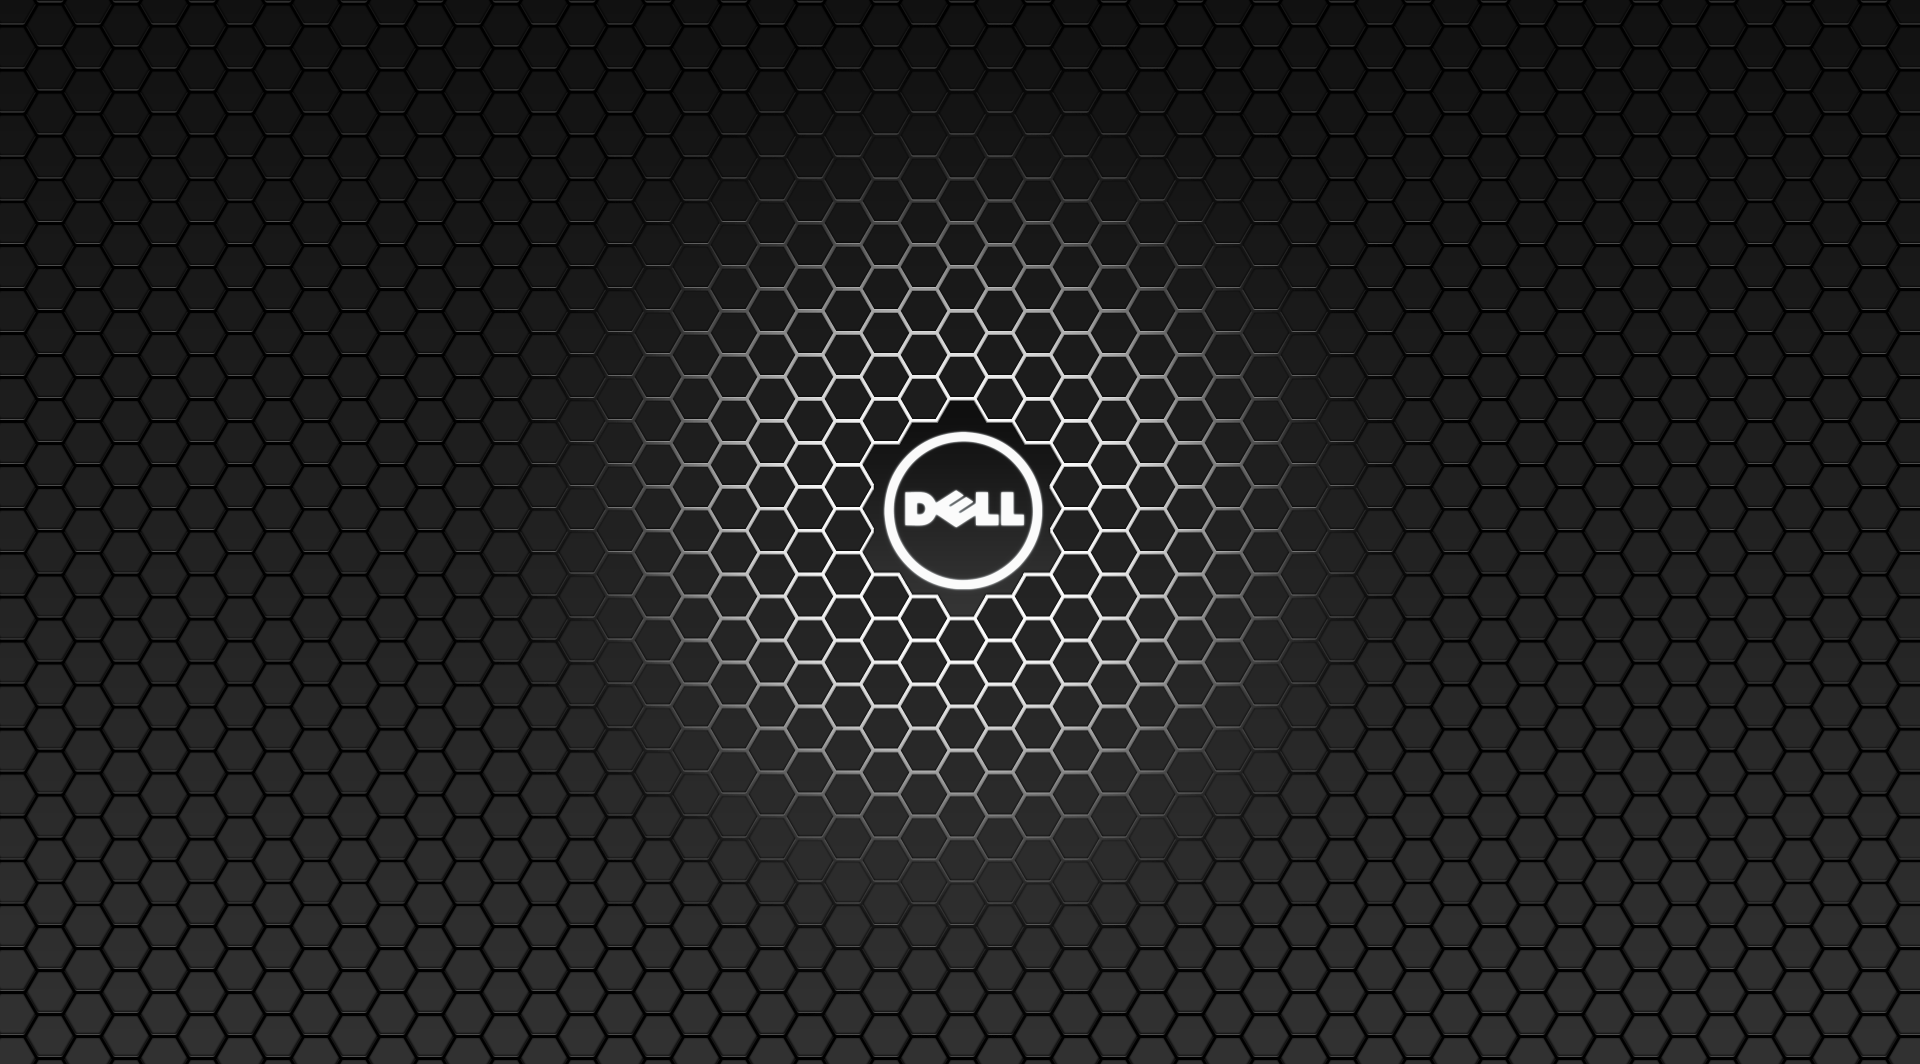 Dell Wallpaper 4K Background, Black Dell Wallpaper 4K, #27542